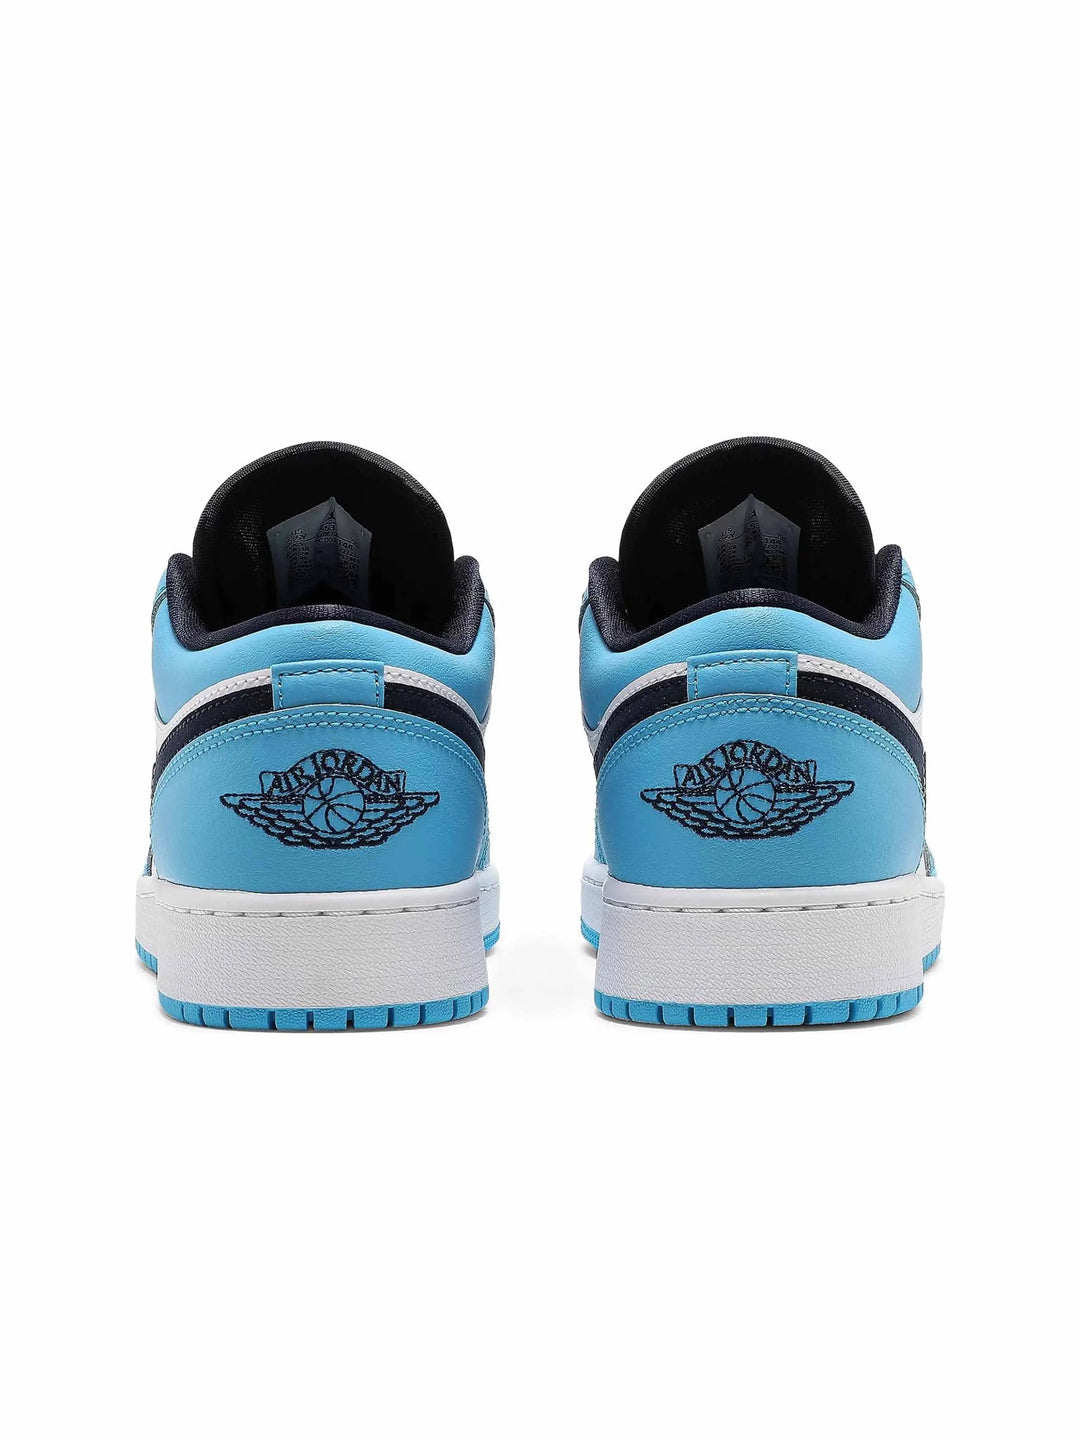 Nike Air Jordan 1 Low UNC (2021) (GS) - Prior